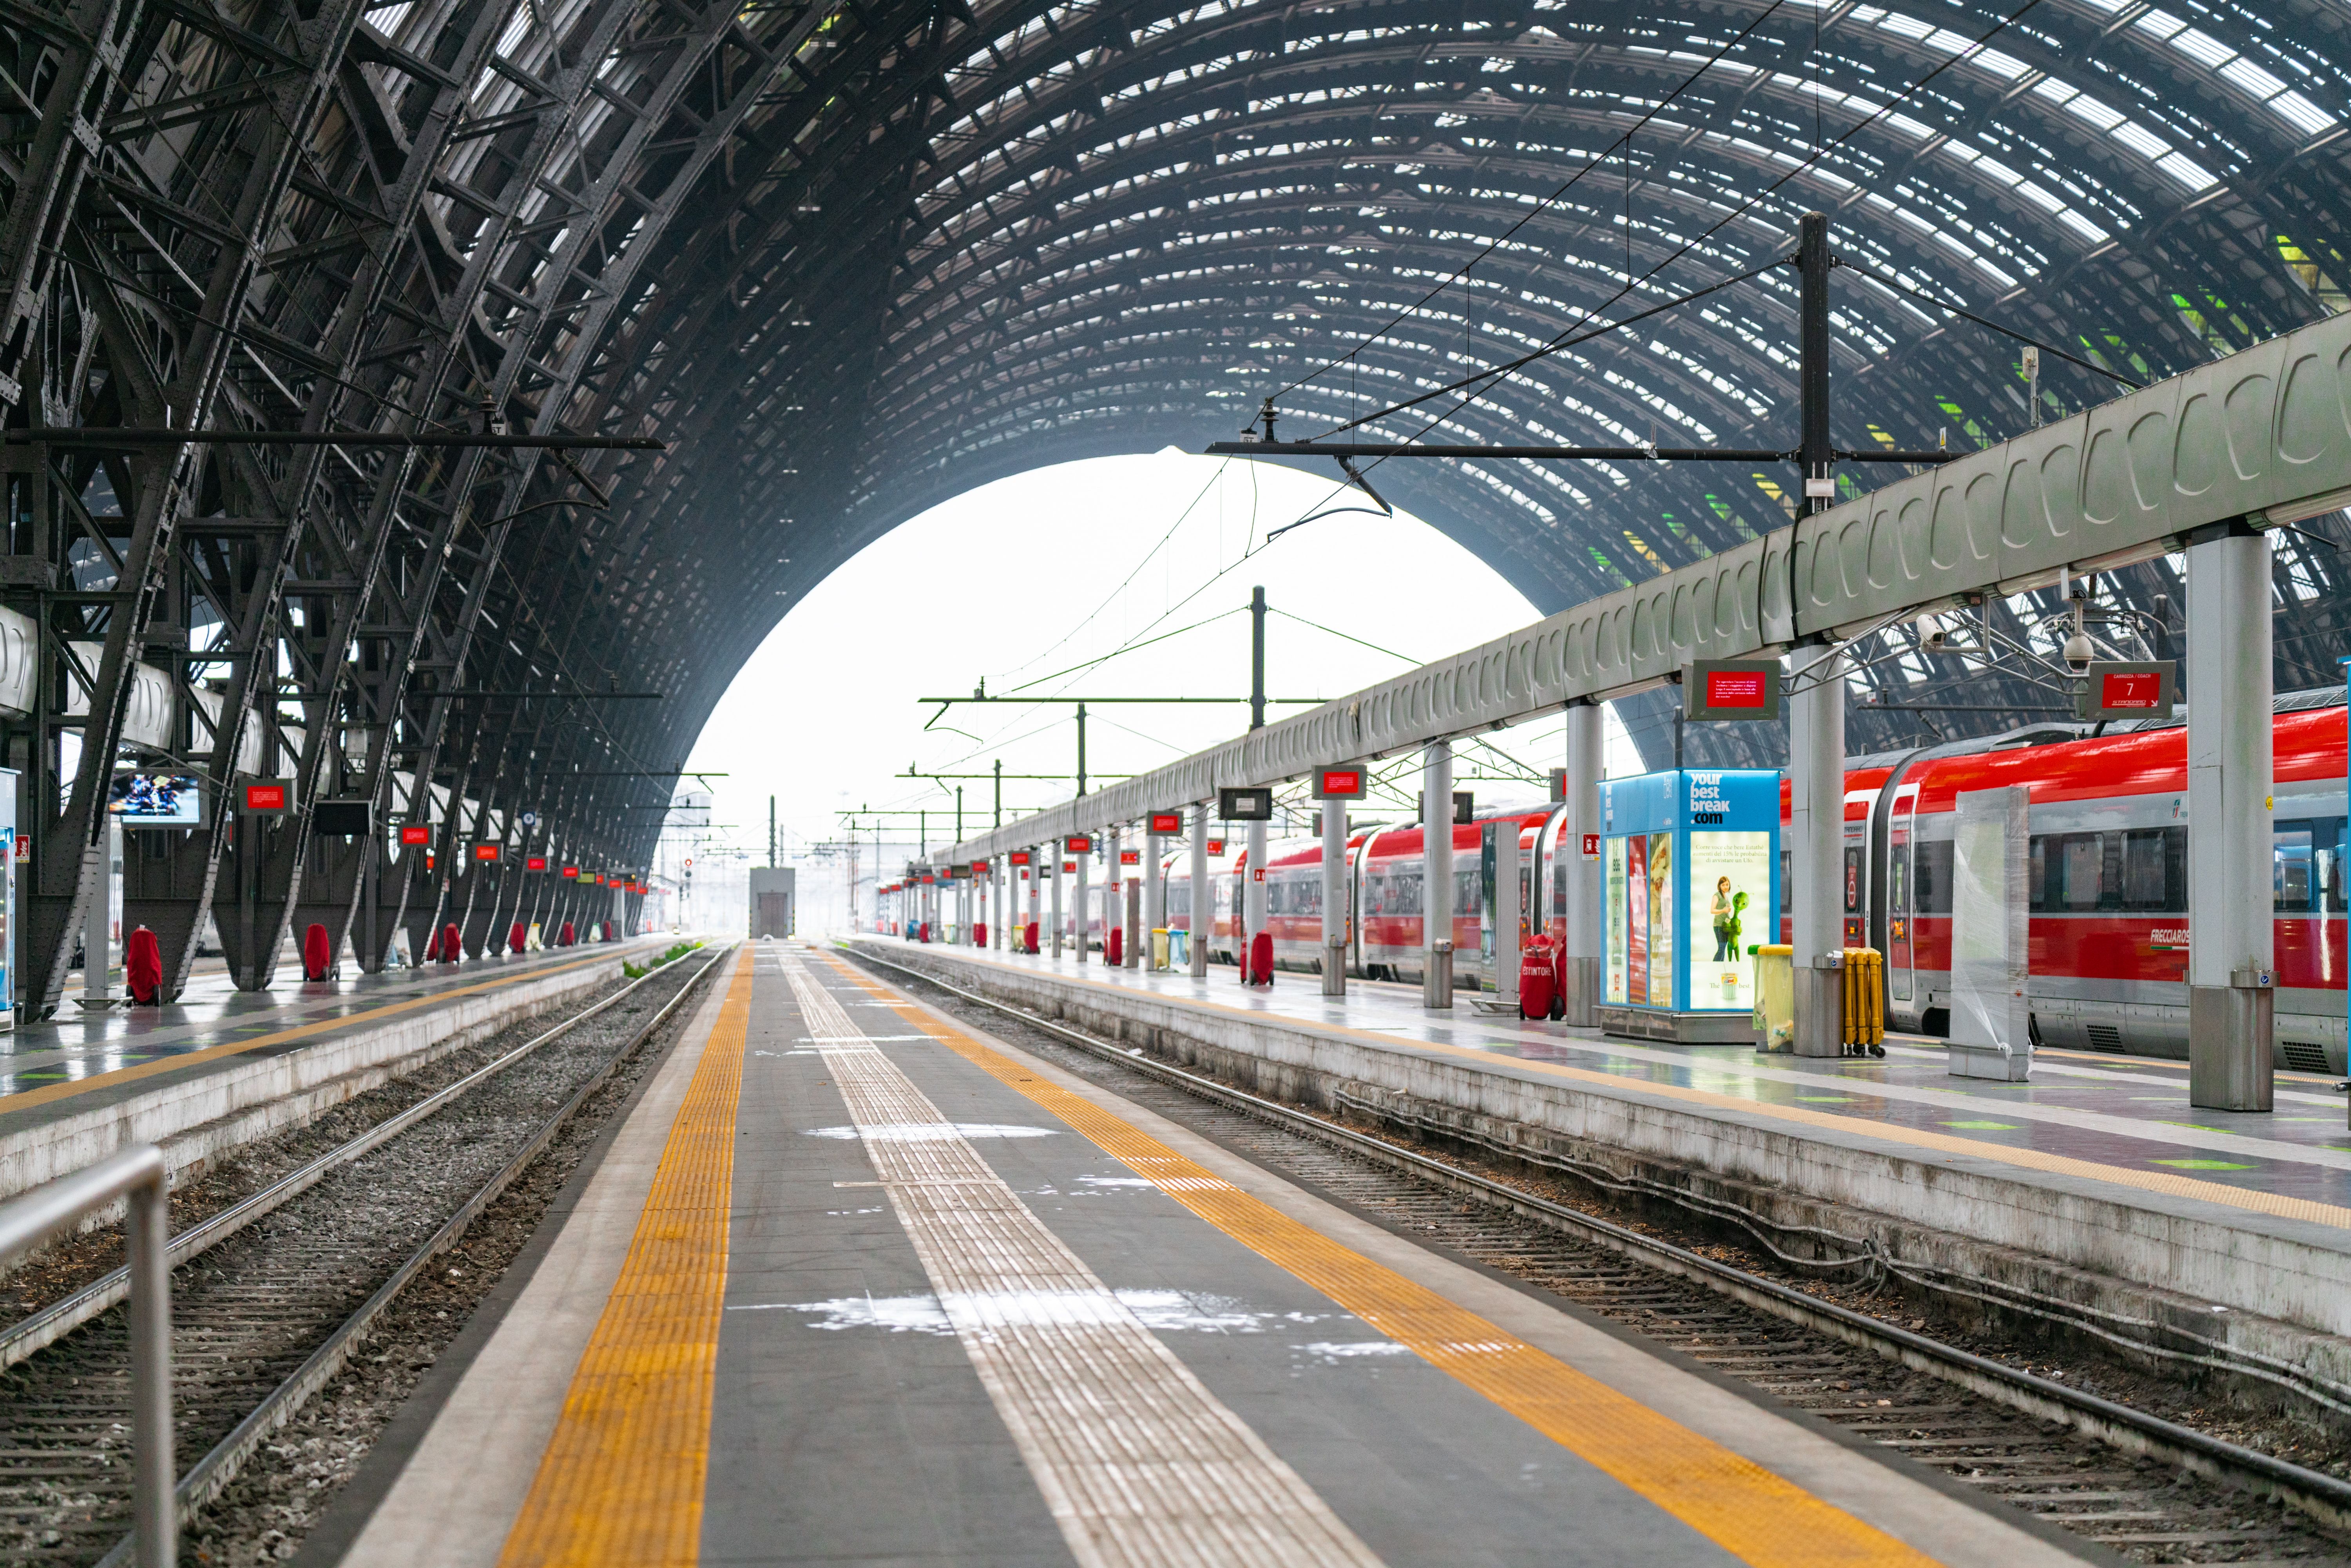 Milan Train Station RatePunk